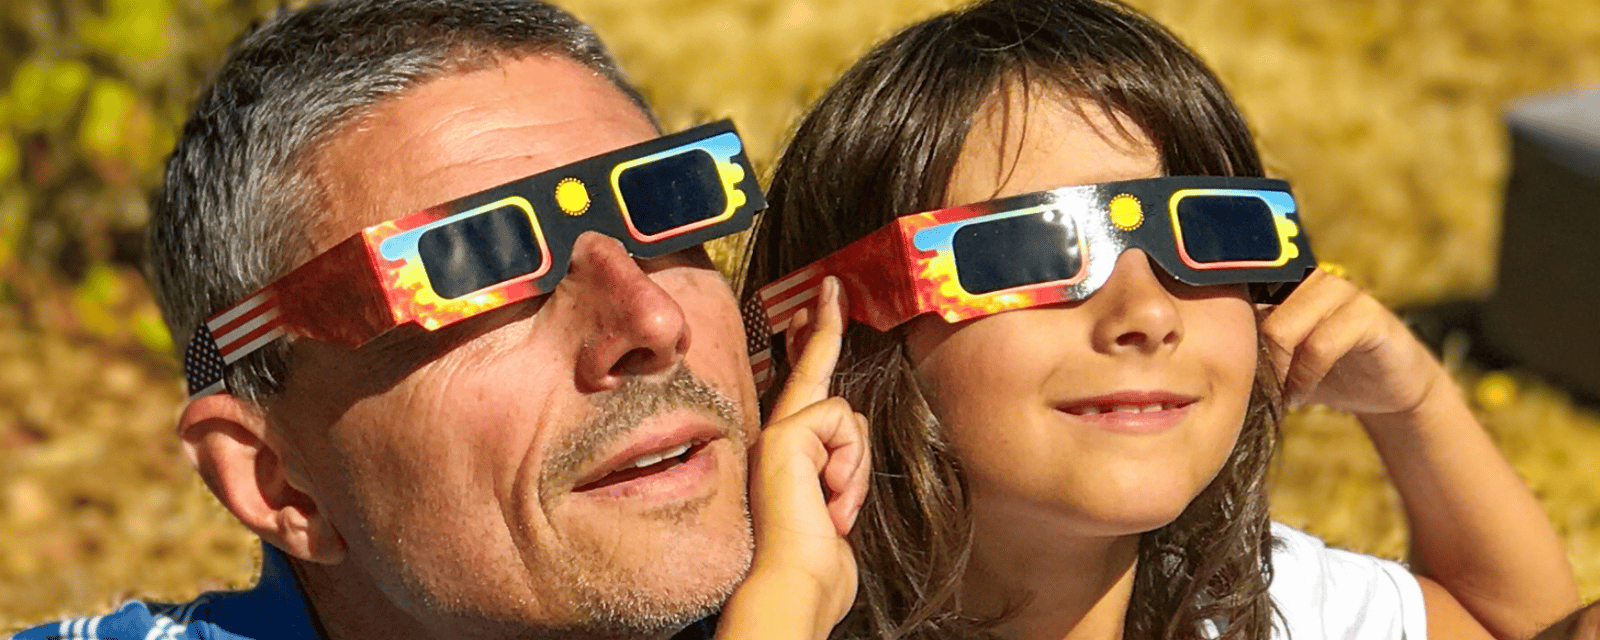 Voici comment vérifier si les lunettes que vous avez pour l'éclipse sont sécuritaires